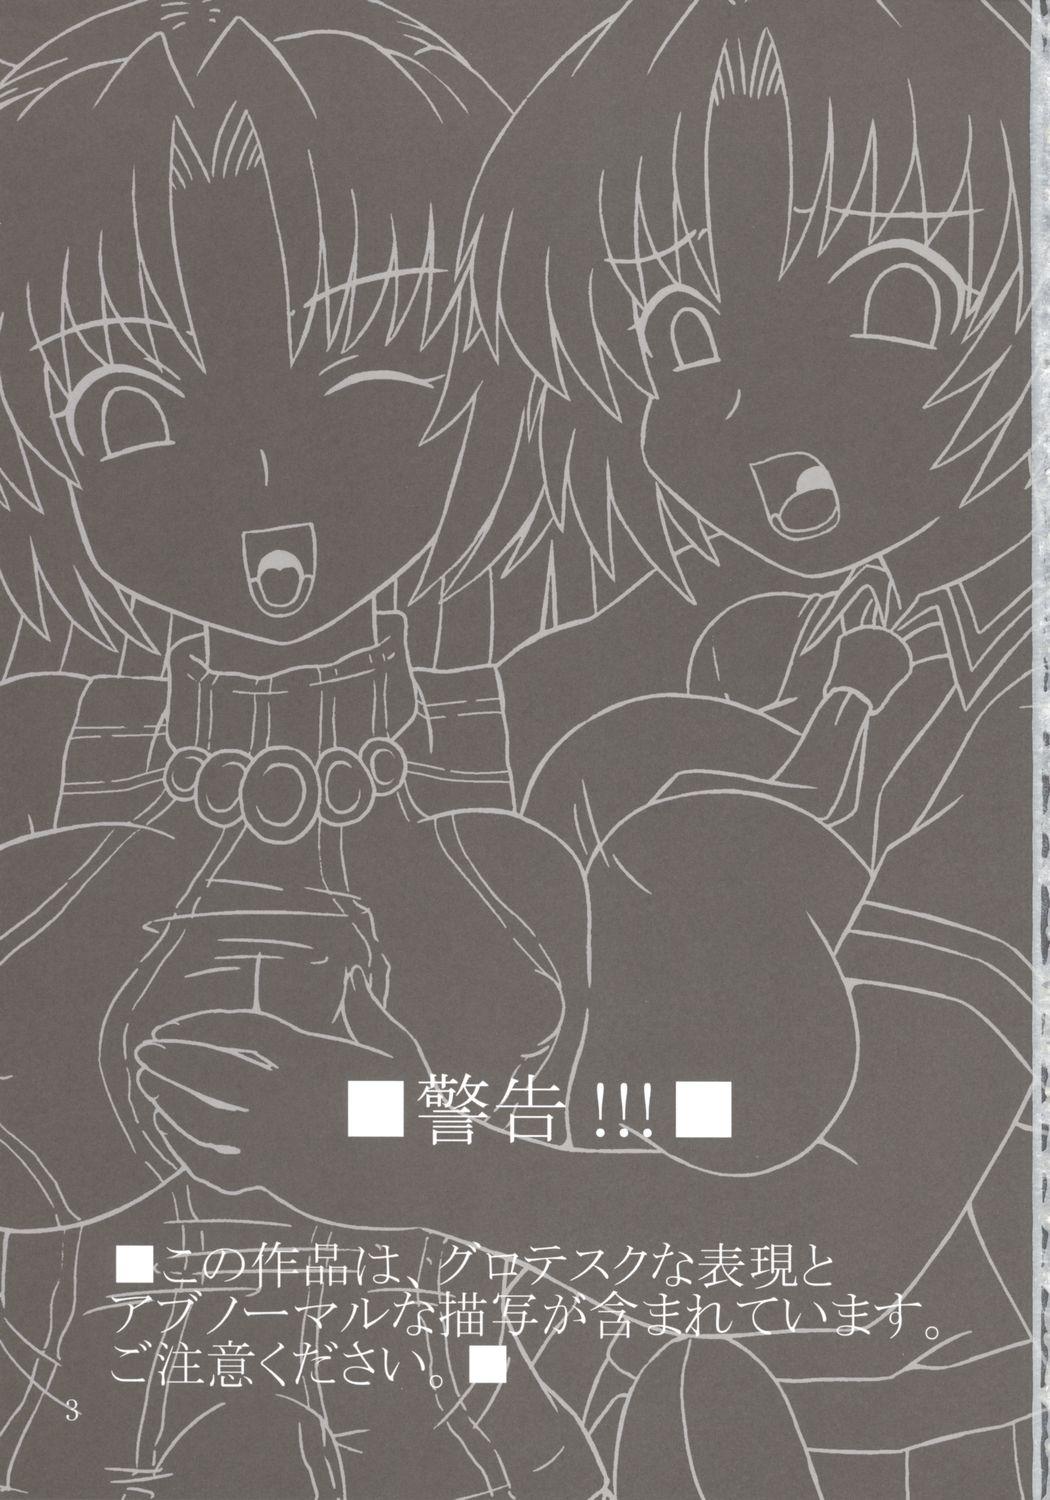 Exgirlfriend Hinamizawa no Hinichijou - Higurashi no naku koro ni Workout - Page 2